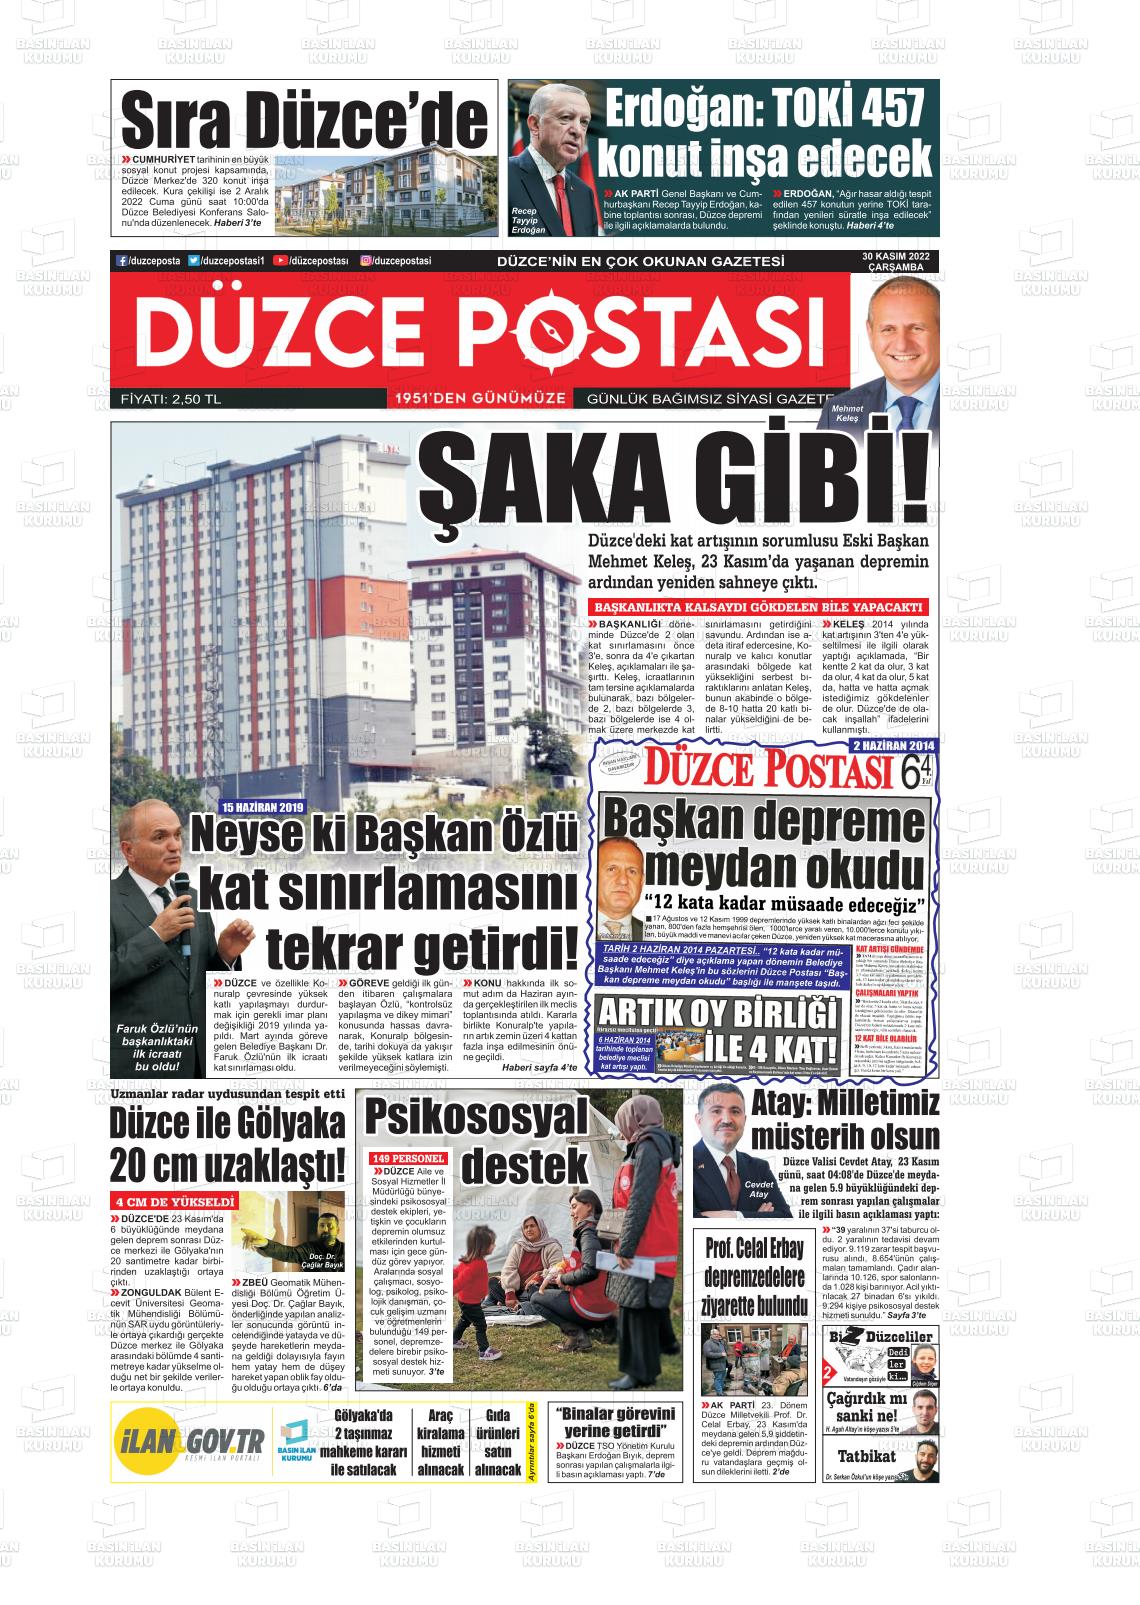 30 Kasım 2022 Düzce Postası Gazete Manşeti